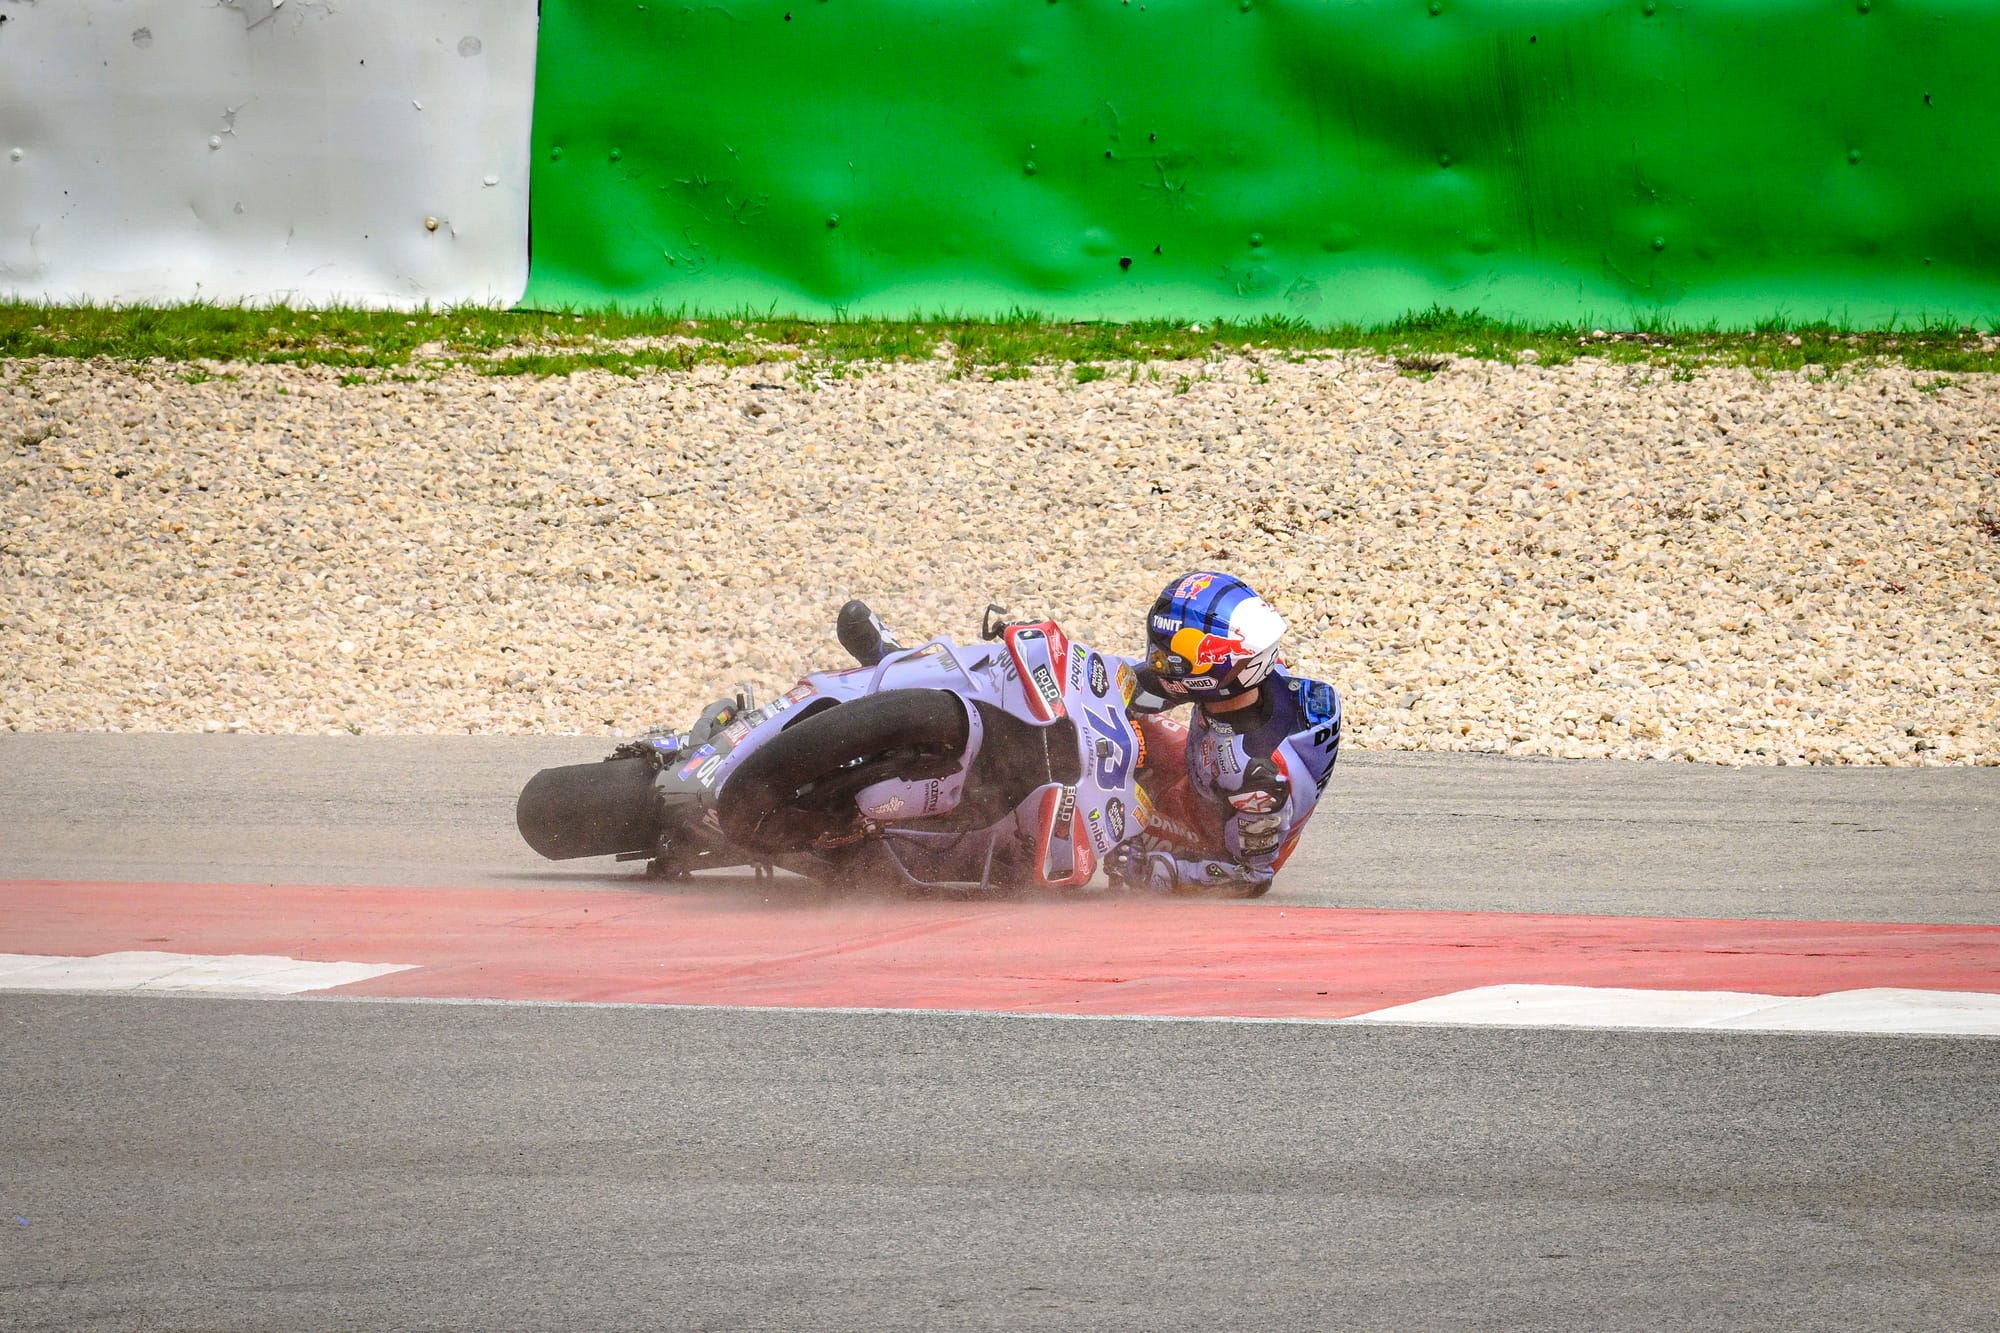 Alex Marquez crash, Gresini Ducati, MotoGP, Portuguese GP